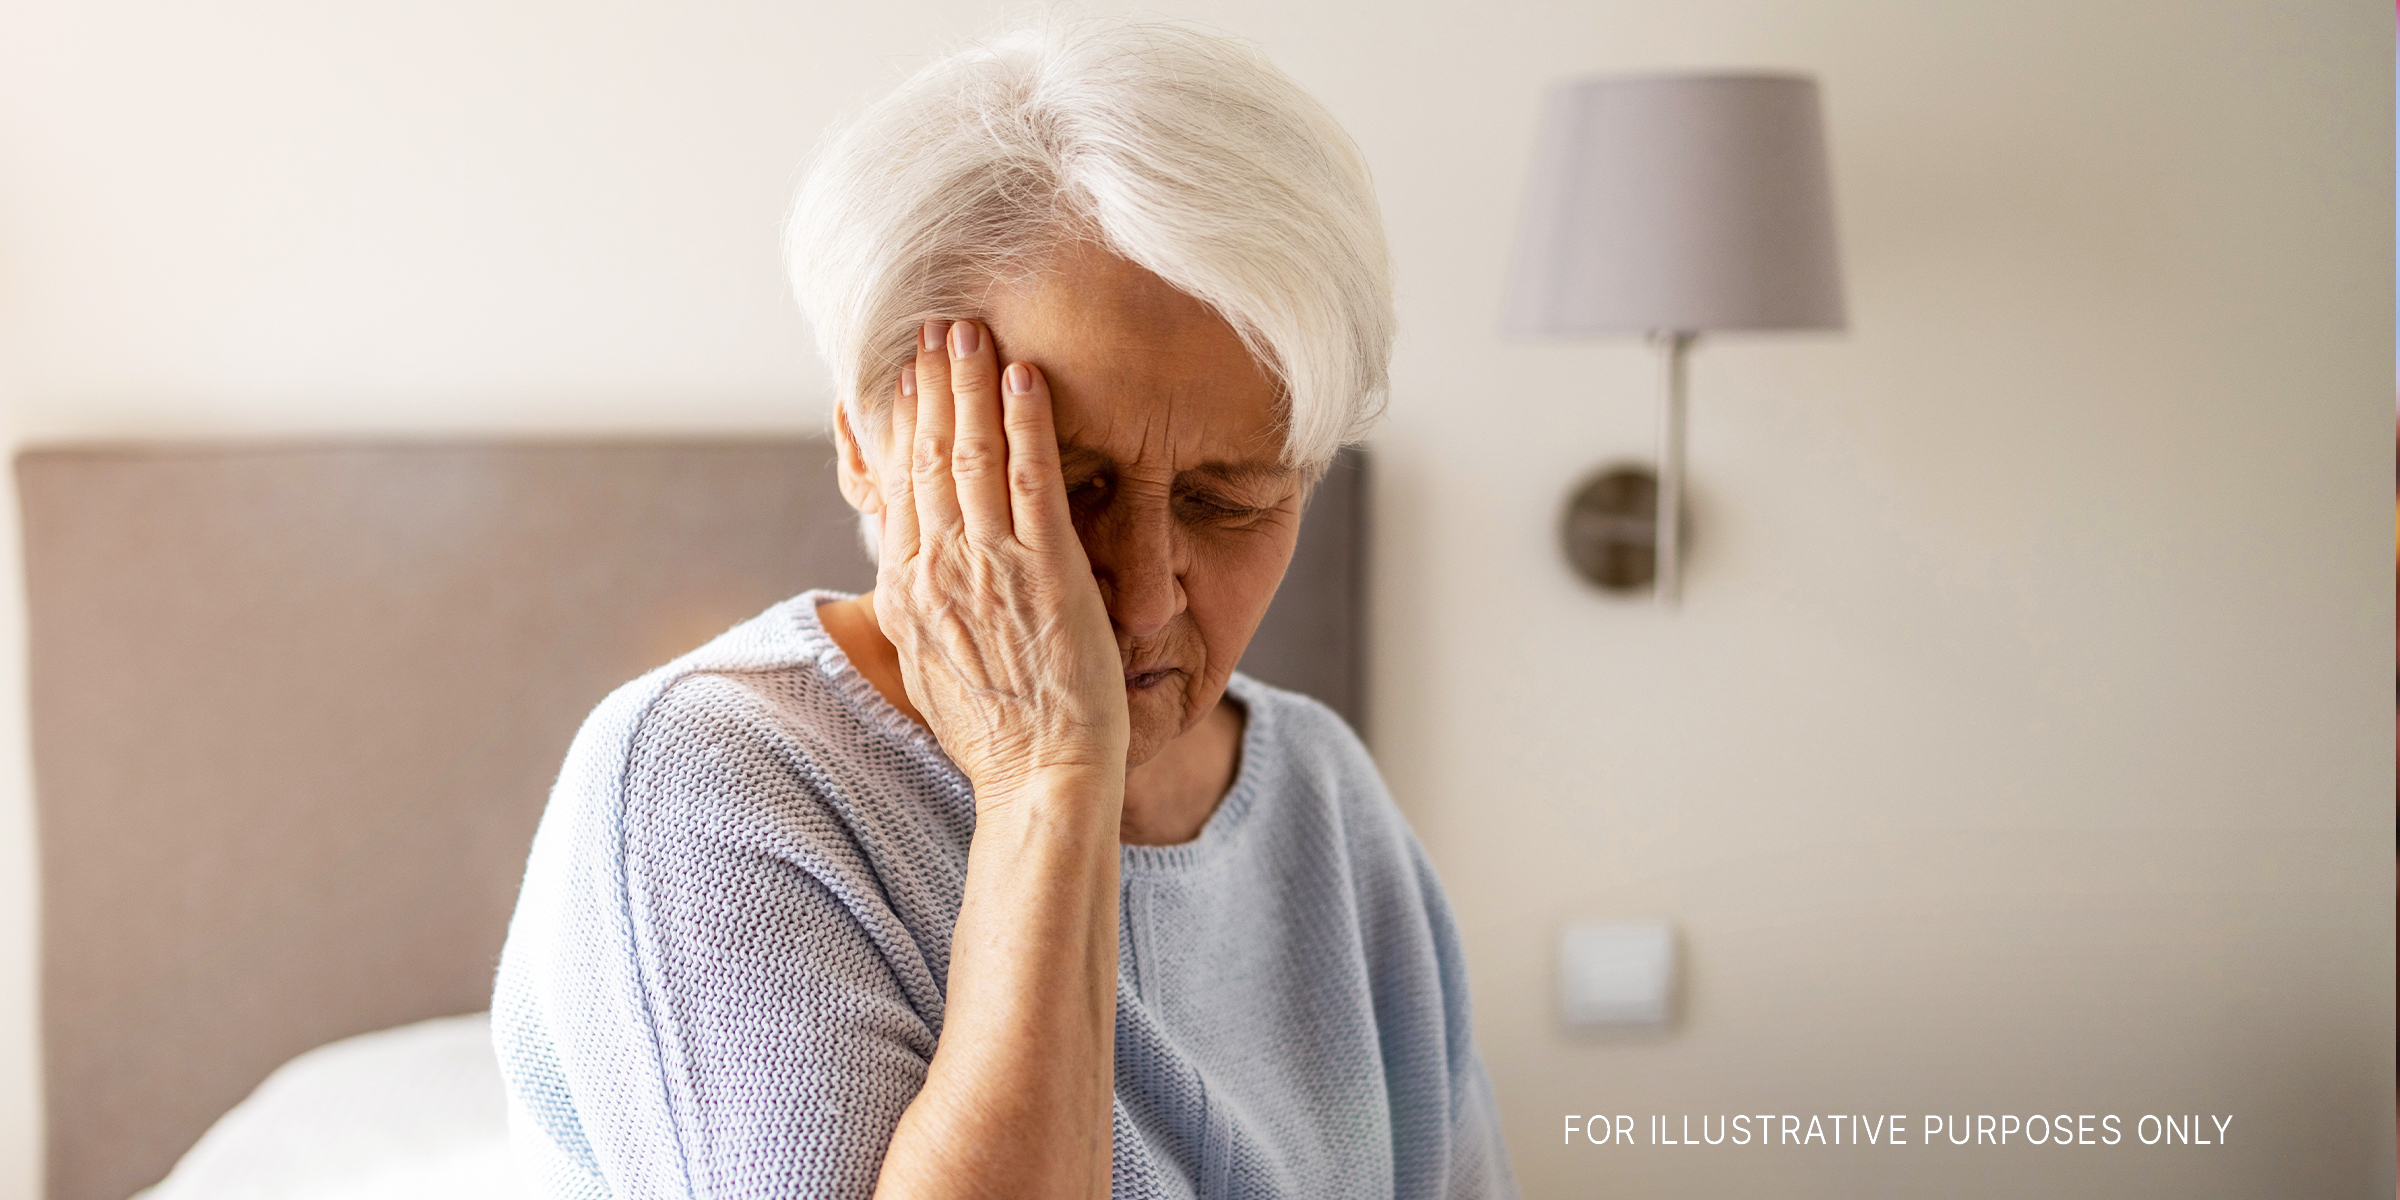 Eine ältere Frau, die gestresst aussieht | Quelle: Shutterstock